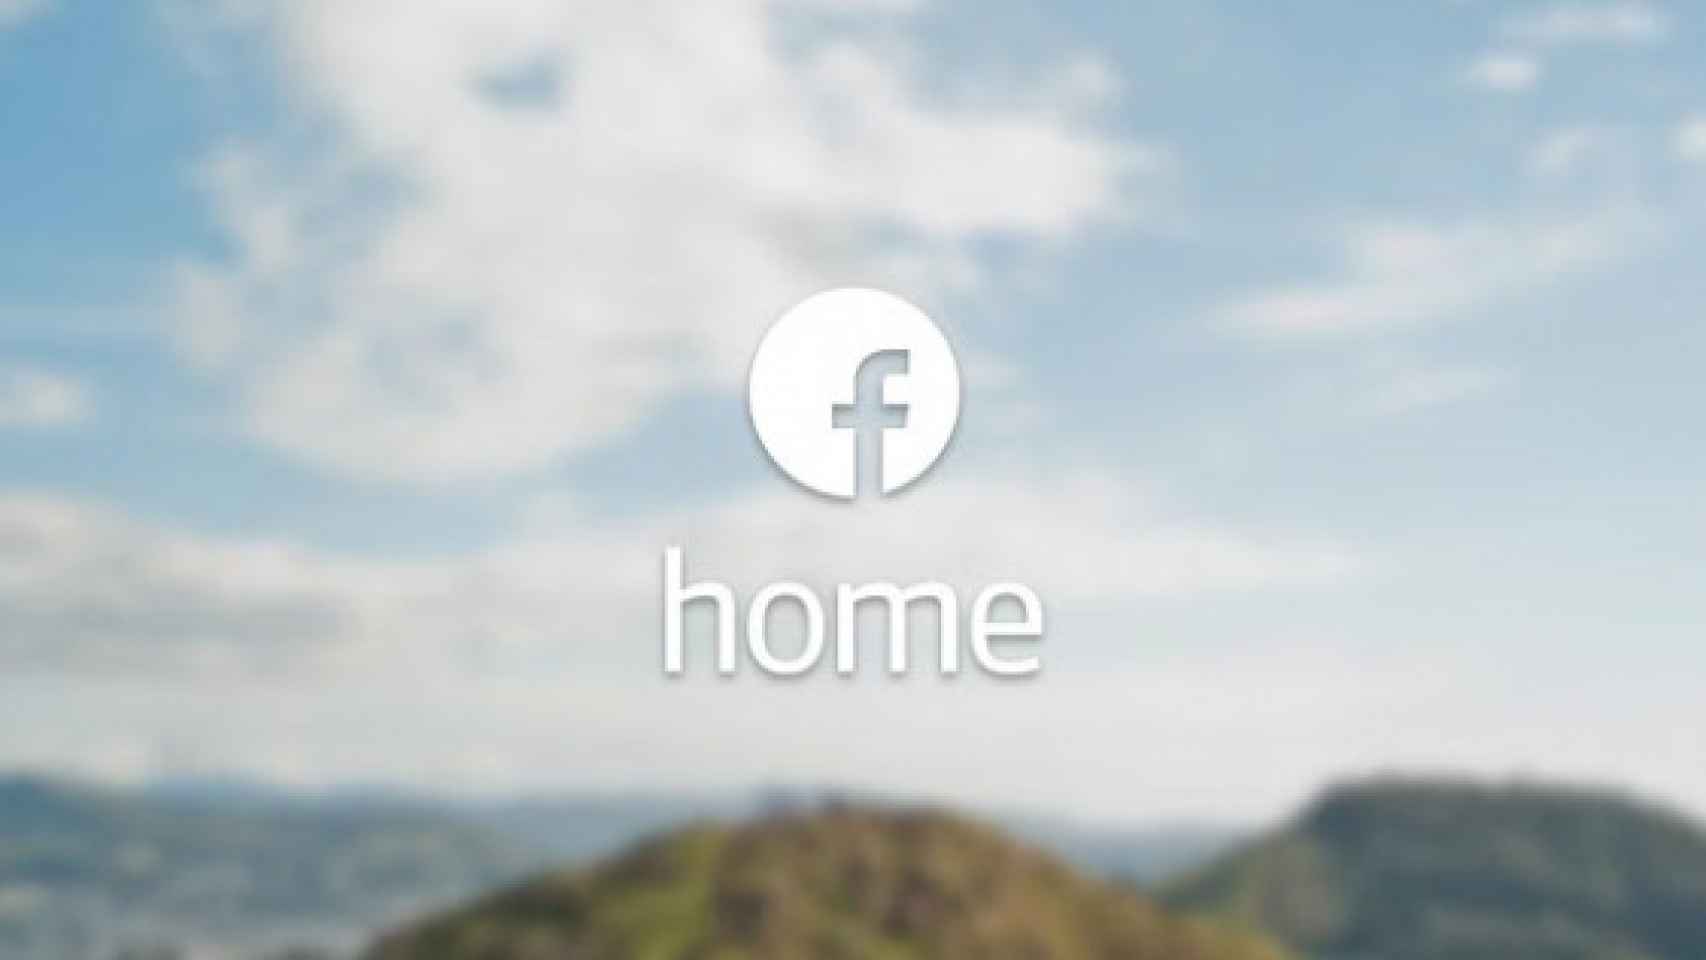 Descarga e instala Facebook Home en un dispositivo no compatible